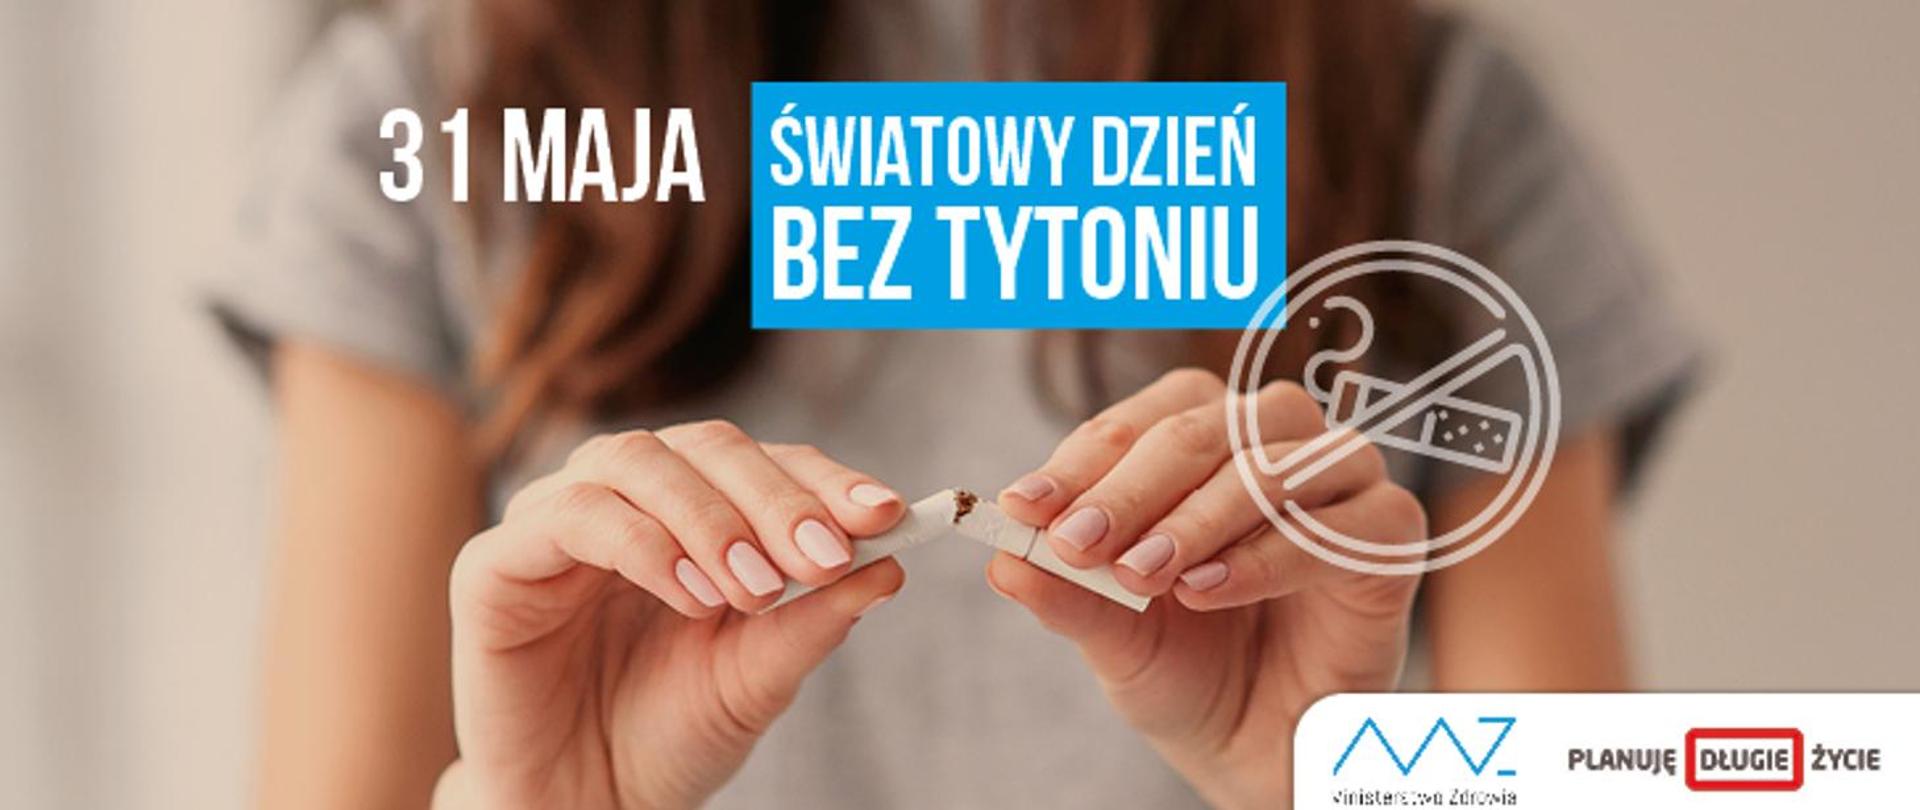 
Światowy Dzień bez Tytoniu - 31 maja
